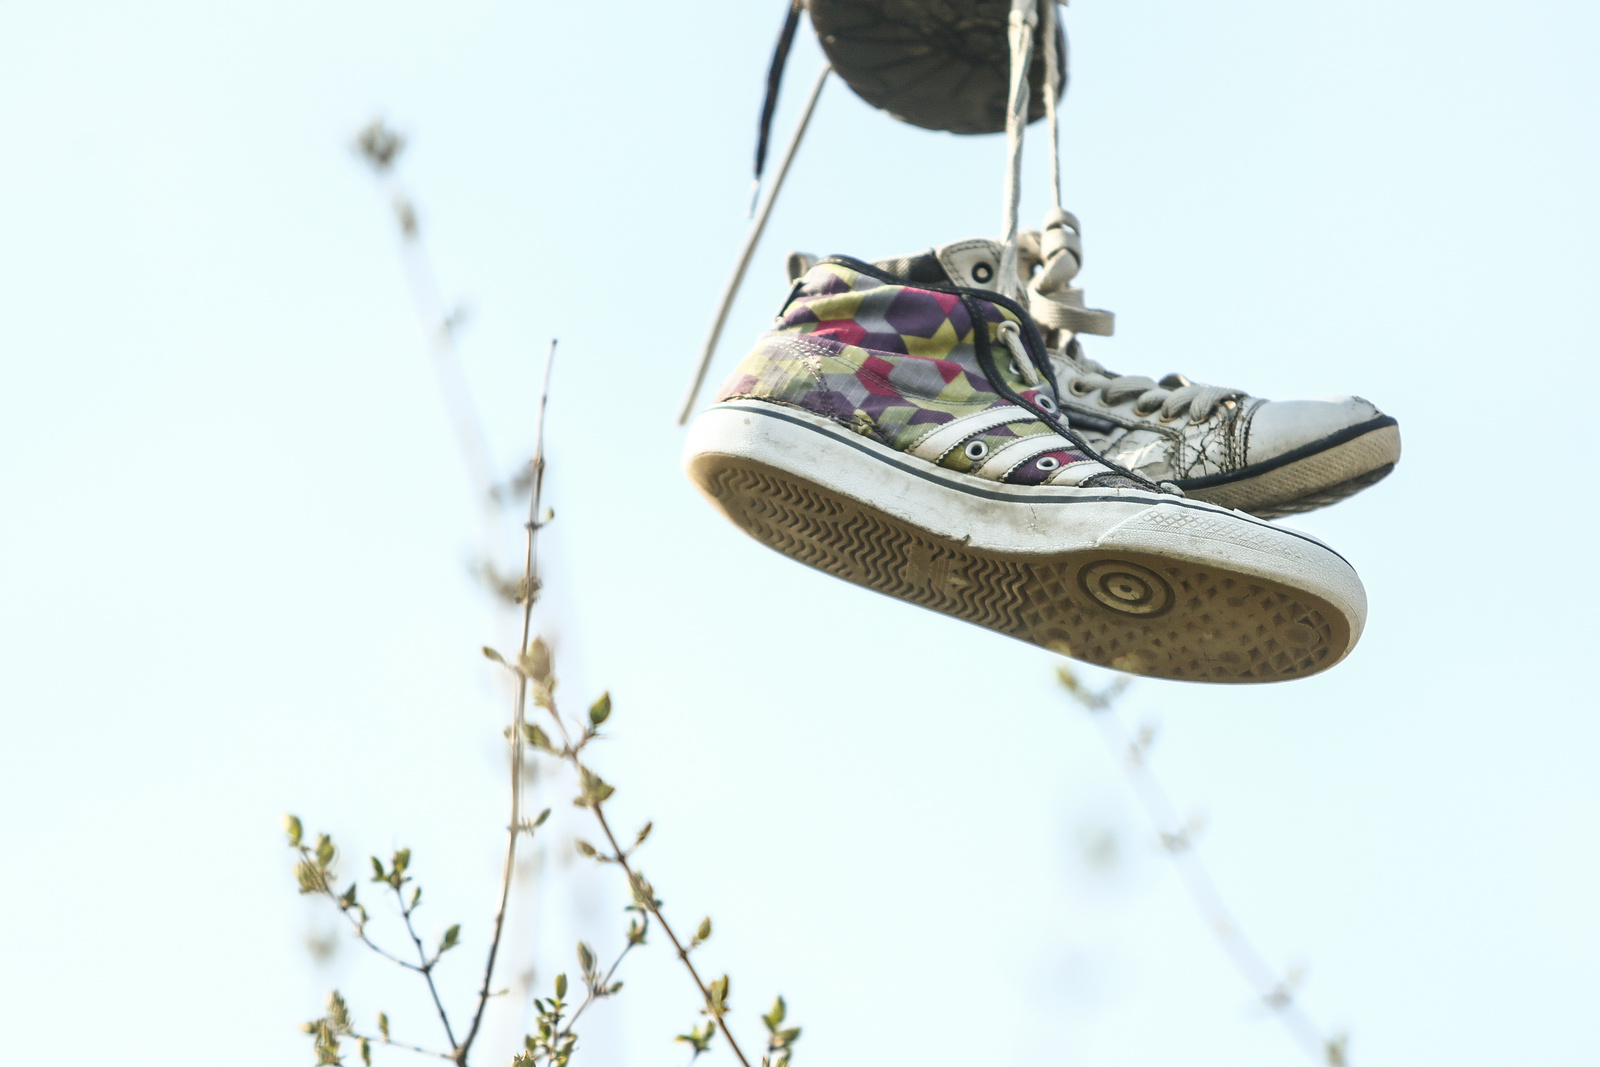 OBRAZEM: Boty na drátech! Mistrovskou ukázku shoefiti lze spatřit na Kaňku  - Kutnohorský deník